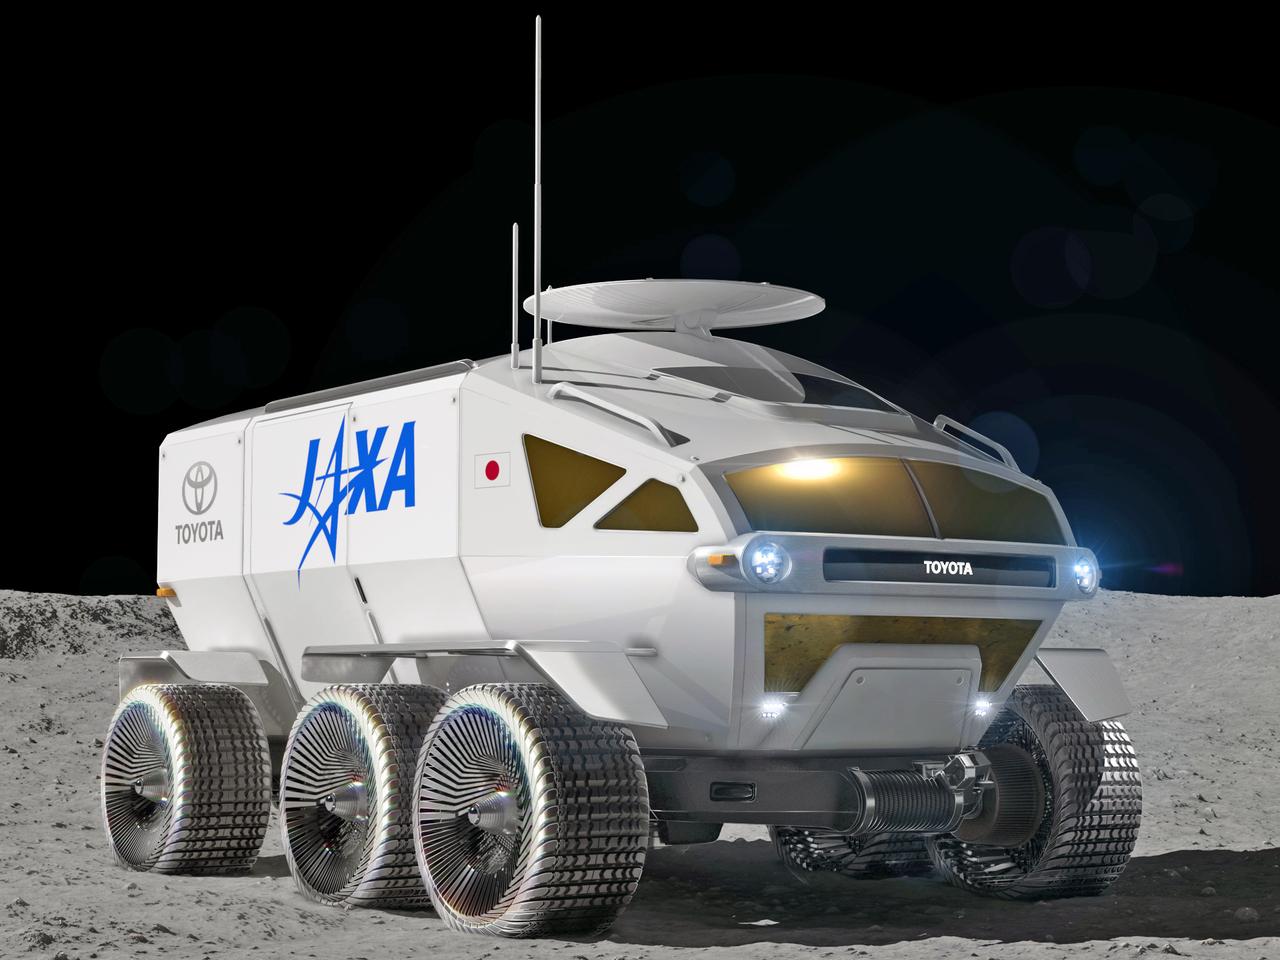 月面をトヨタ車が走る日もそう遠い話ではない。JAXAとトヨタが国際宇宙探査ミッションへの挑戦に合意